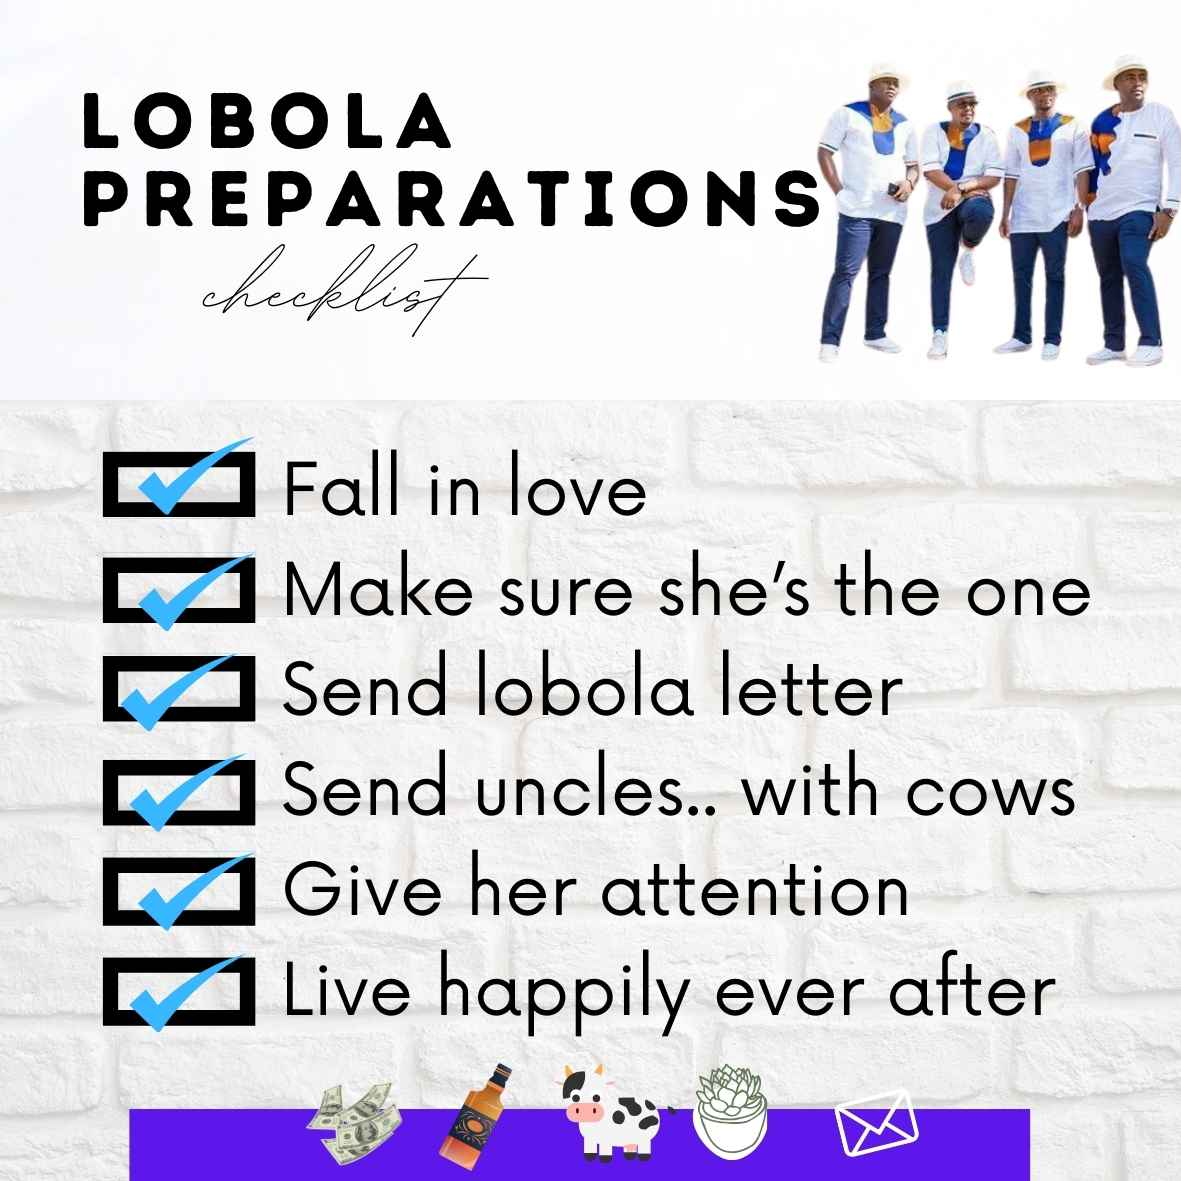 Lobola preparation checklist